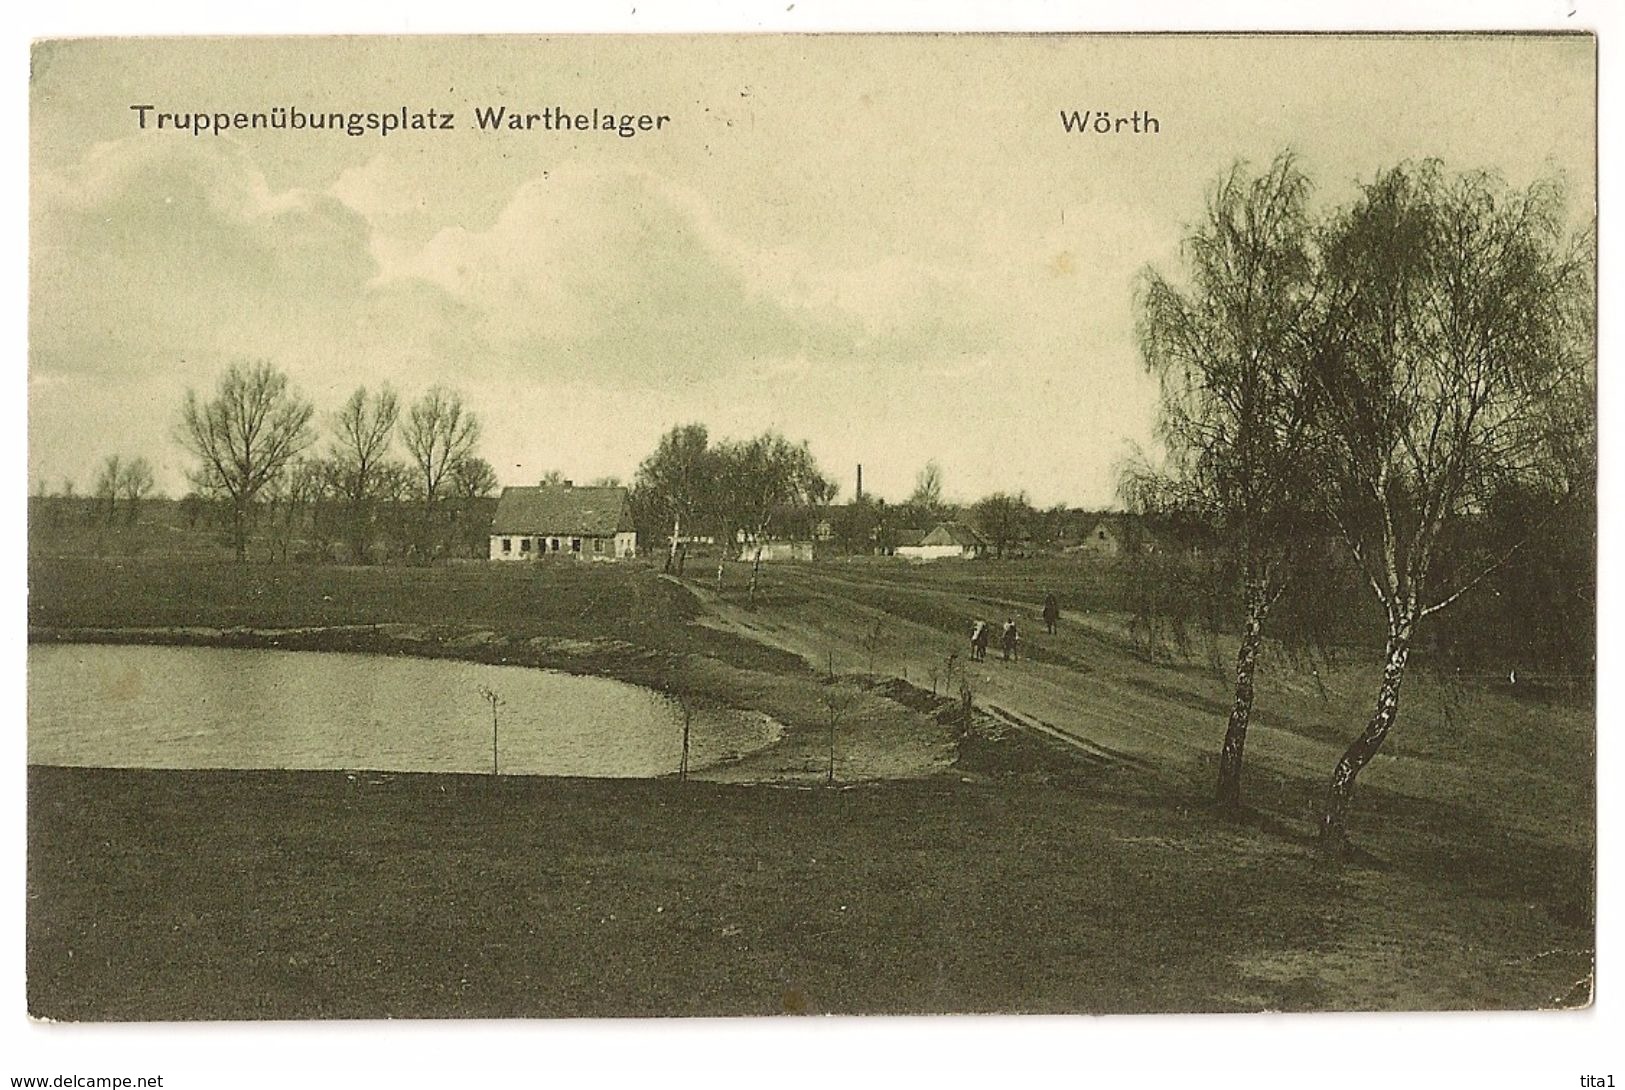 S6602 - Wörth - Truppenübungsplatz Warthelager - Wörth